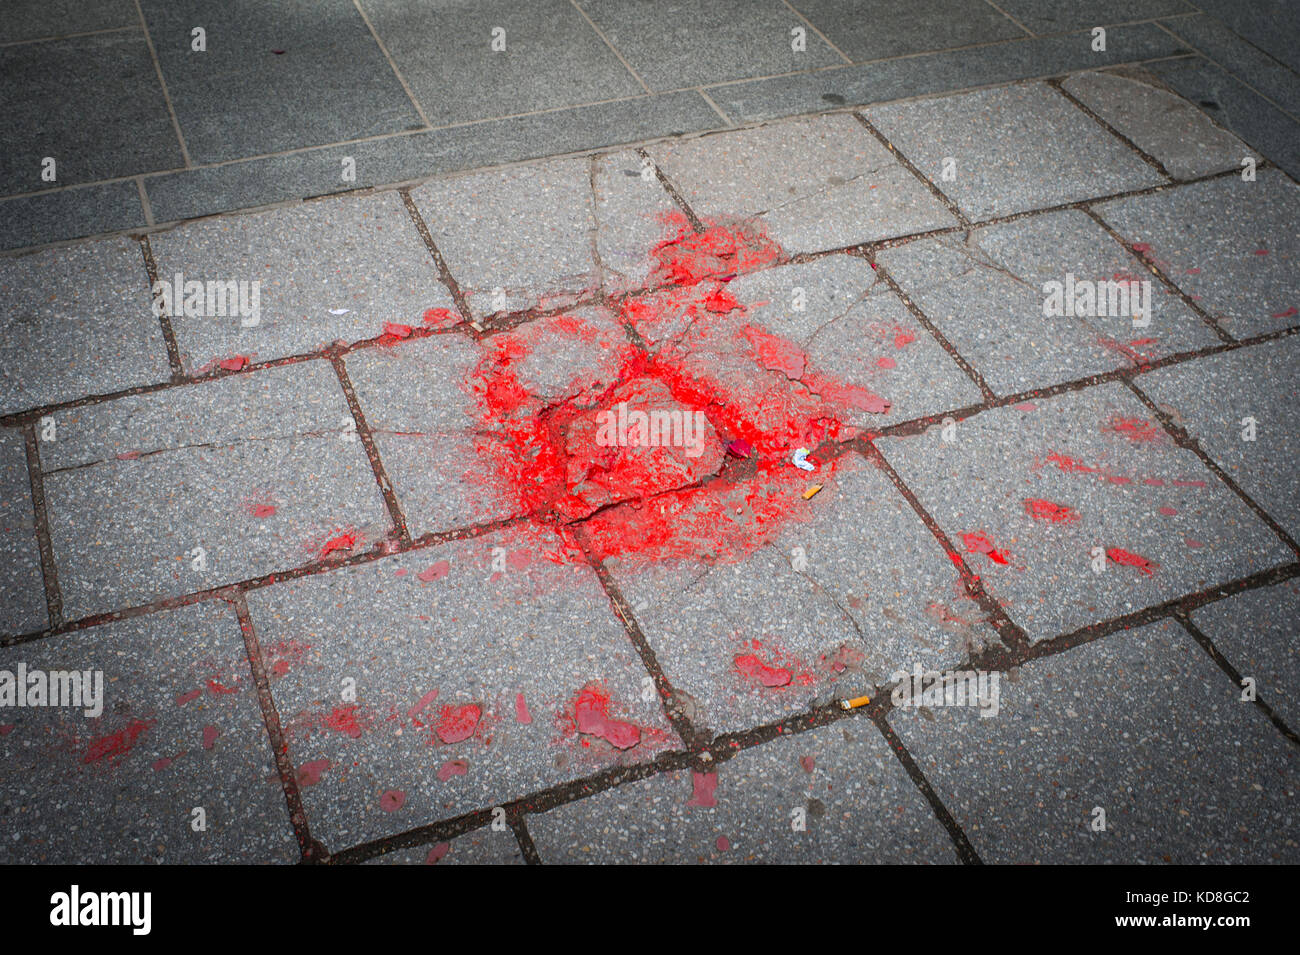 Les roses de Sarajevo sont des éclats d'obus dispersées sur les trottoirs de la ville. Stock Photo